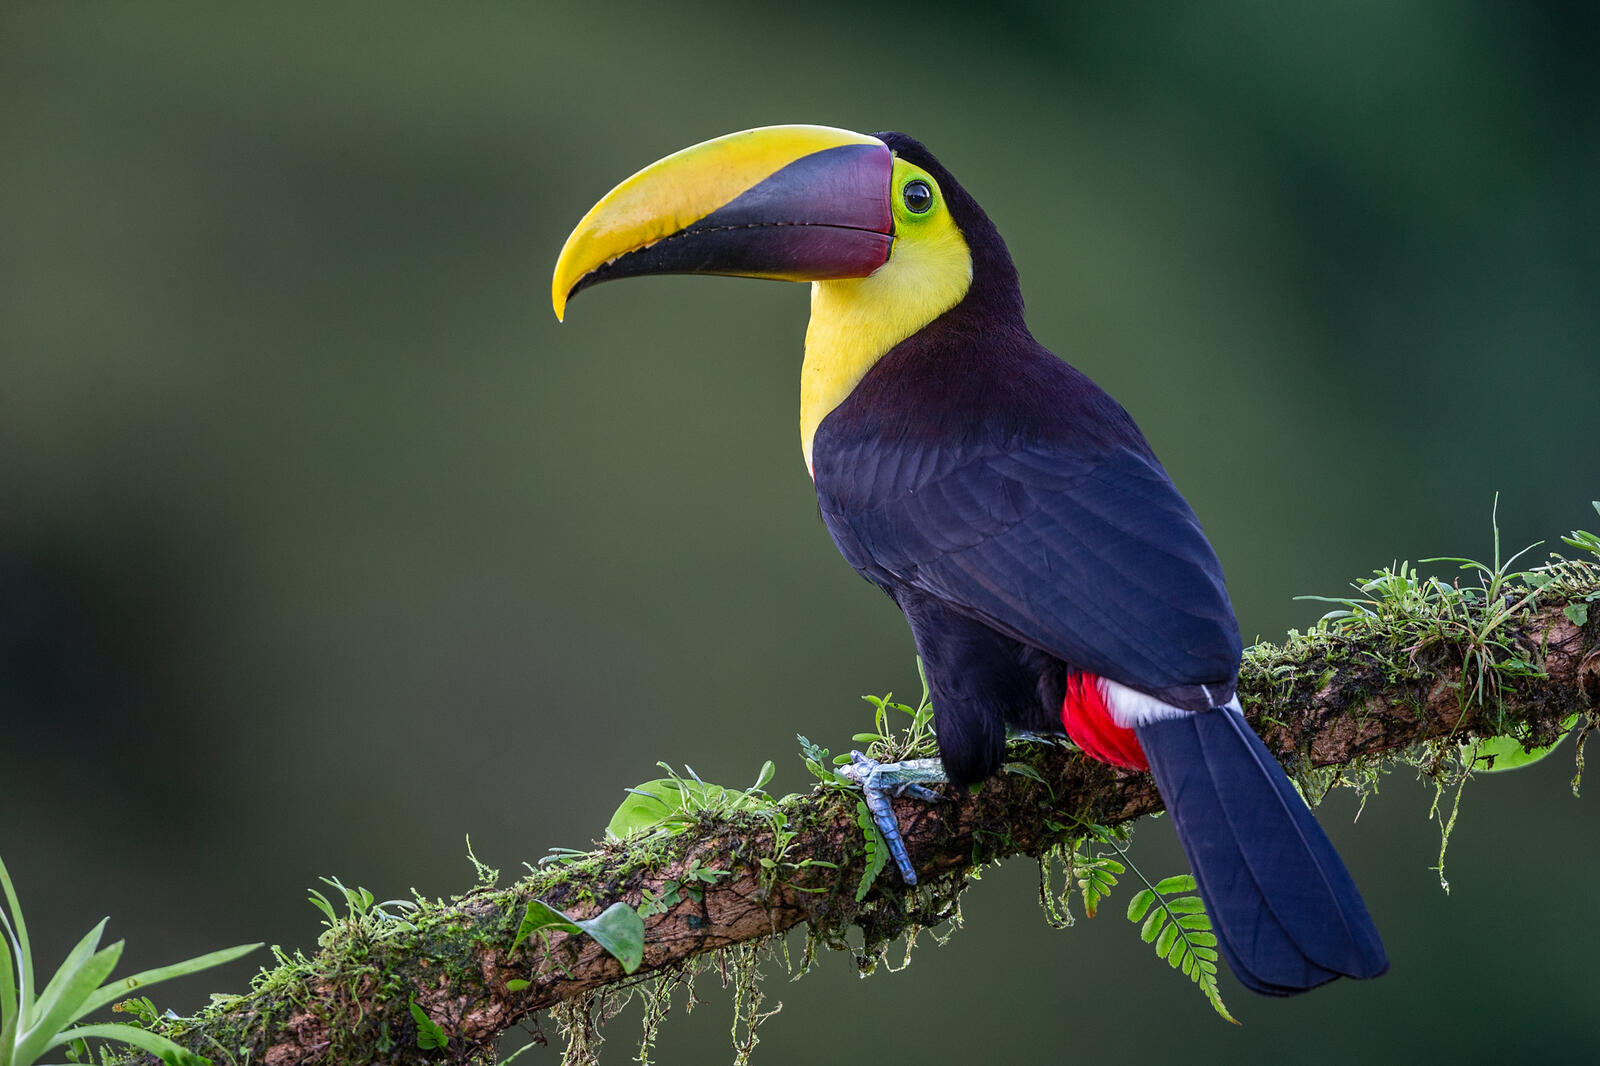 Обои Yellow-throated toucan Желтогорлый тукан Ramphastidae на рабочий стол